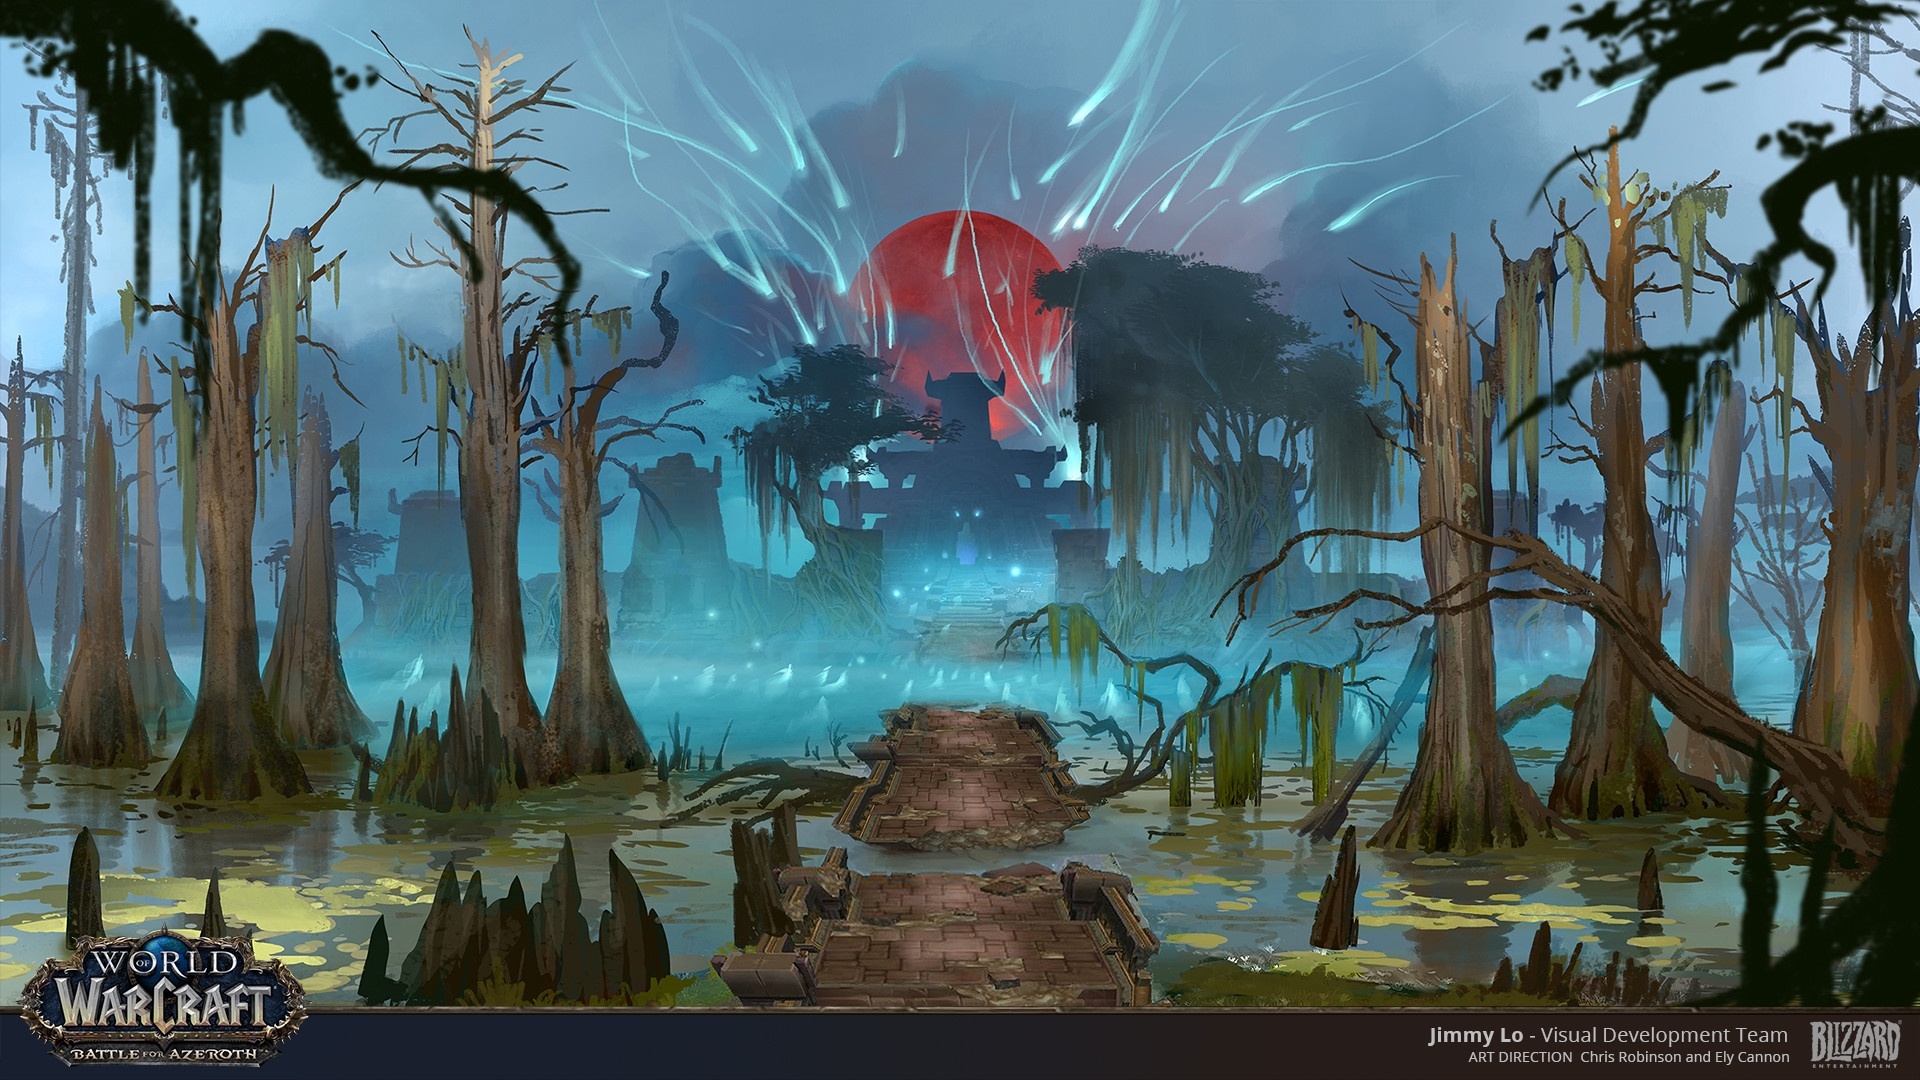 Обновление в аватар ворлд где найти яйца. World of Warcraft пейзажи. Концепт арты локаций. World of Warcraft environment Concept Art. Фонтан концепт арт.